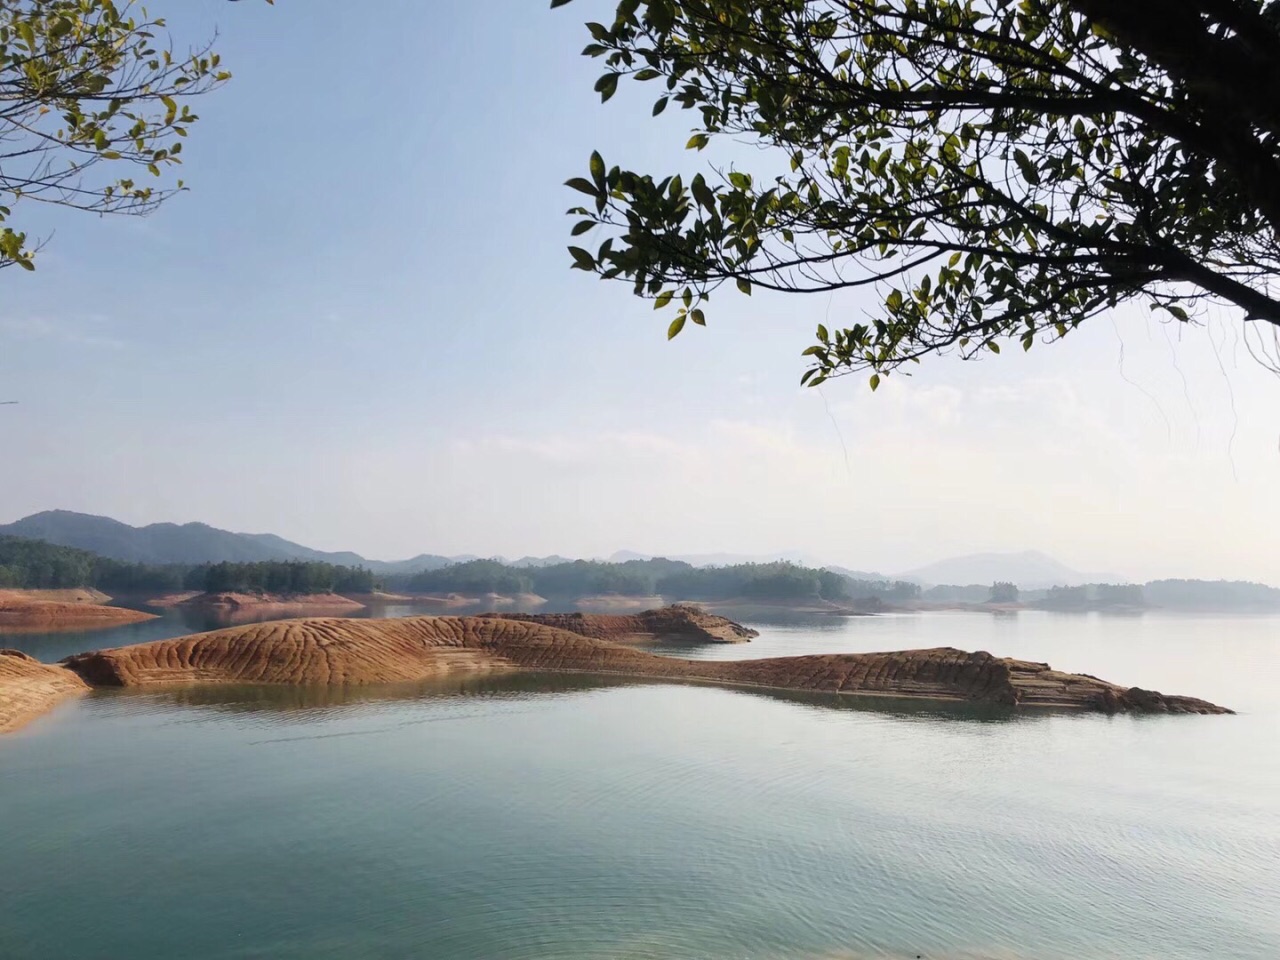 青山碧水万绿湖 舒缓悠扬的纯净自然之旅(2)_旅游摄影-蜂鸟网